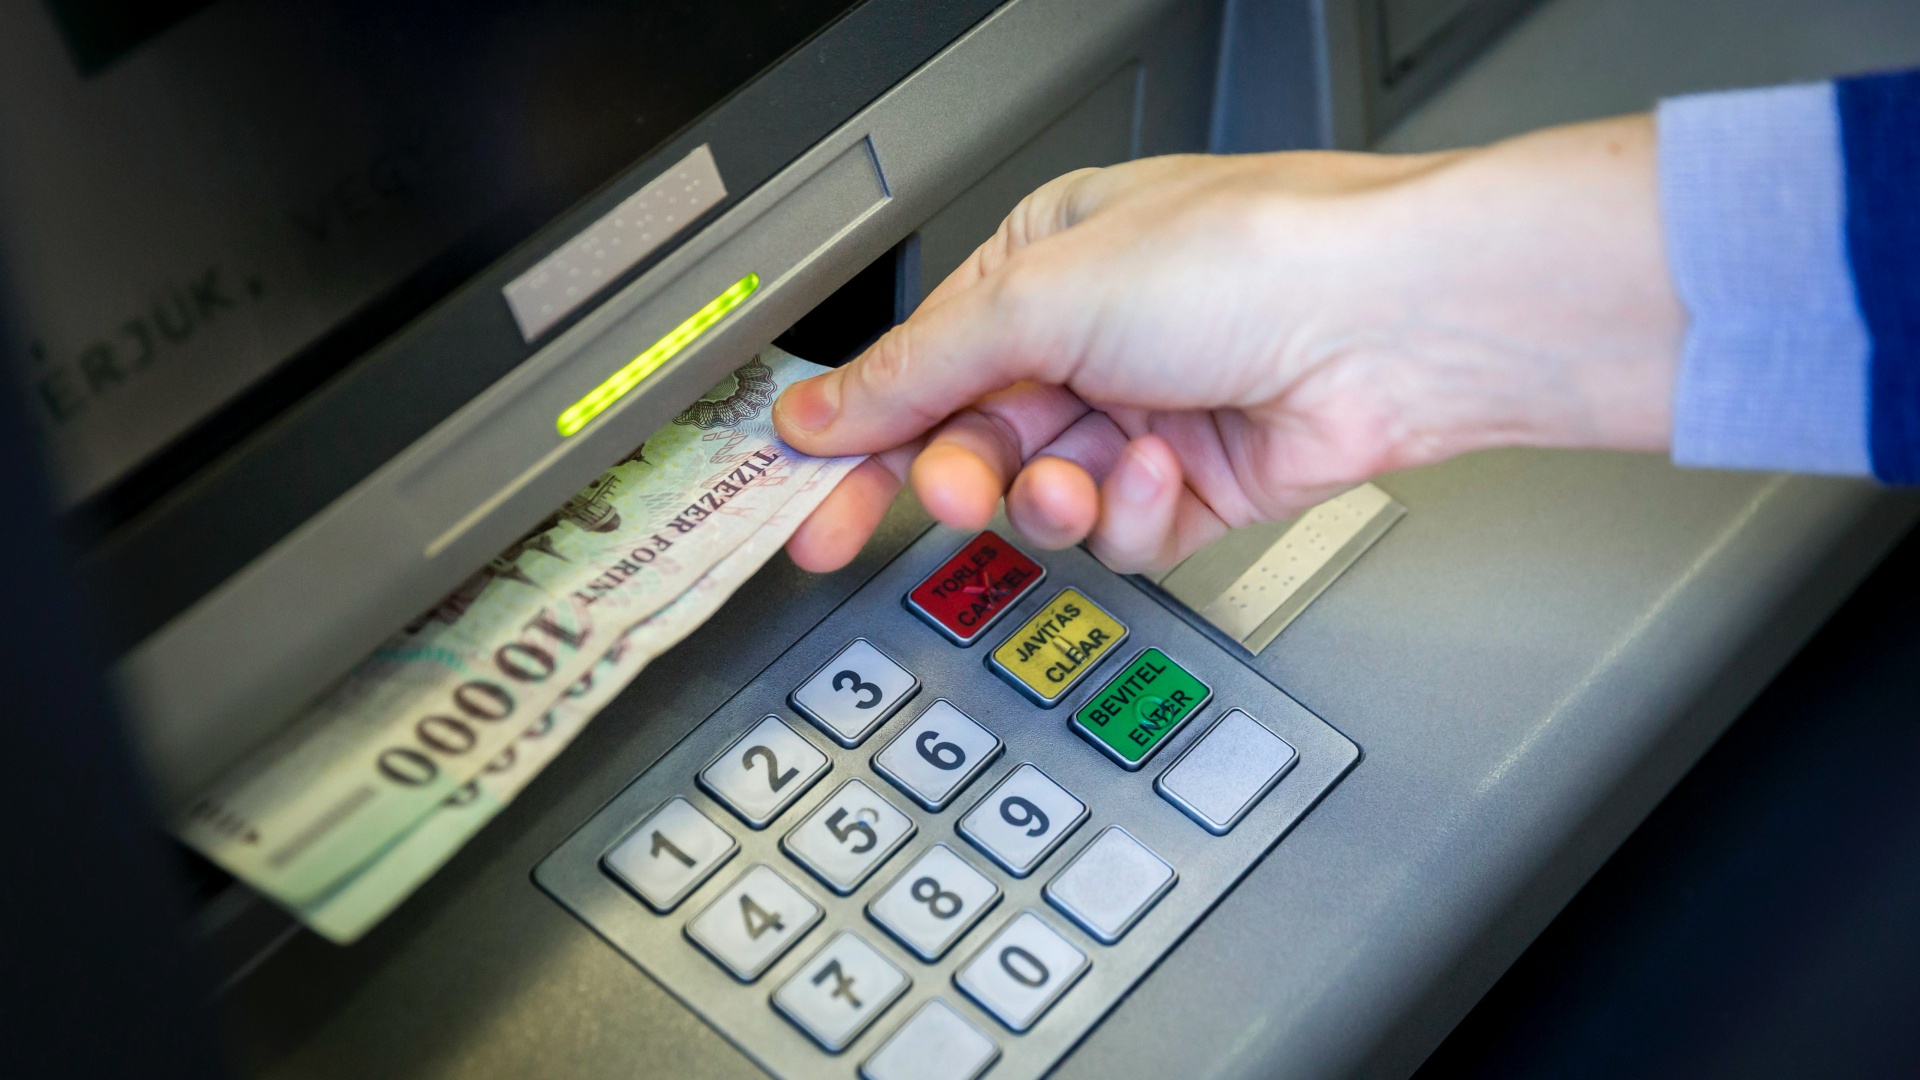 Bankjegyeket vesz ki egy pénzkiadó automatából (ATM) egy ügyfél a Sberbank központi bankfiókjában Budapesten, a Rákóczi úton 2014. március 25-én.